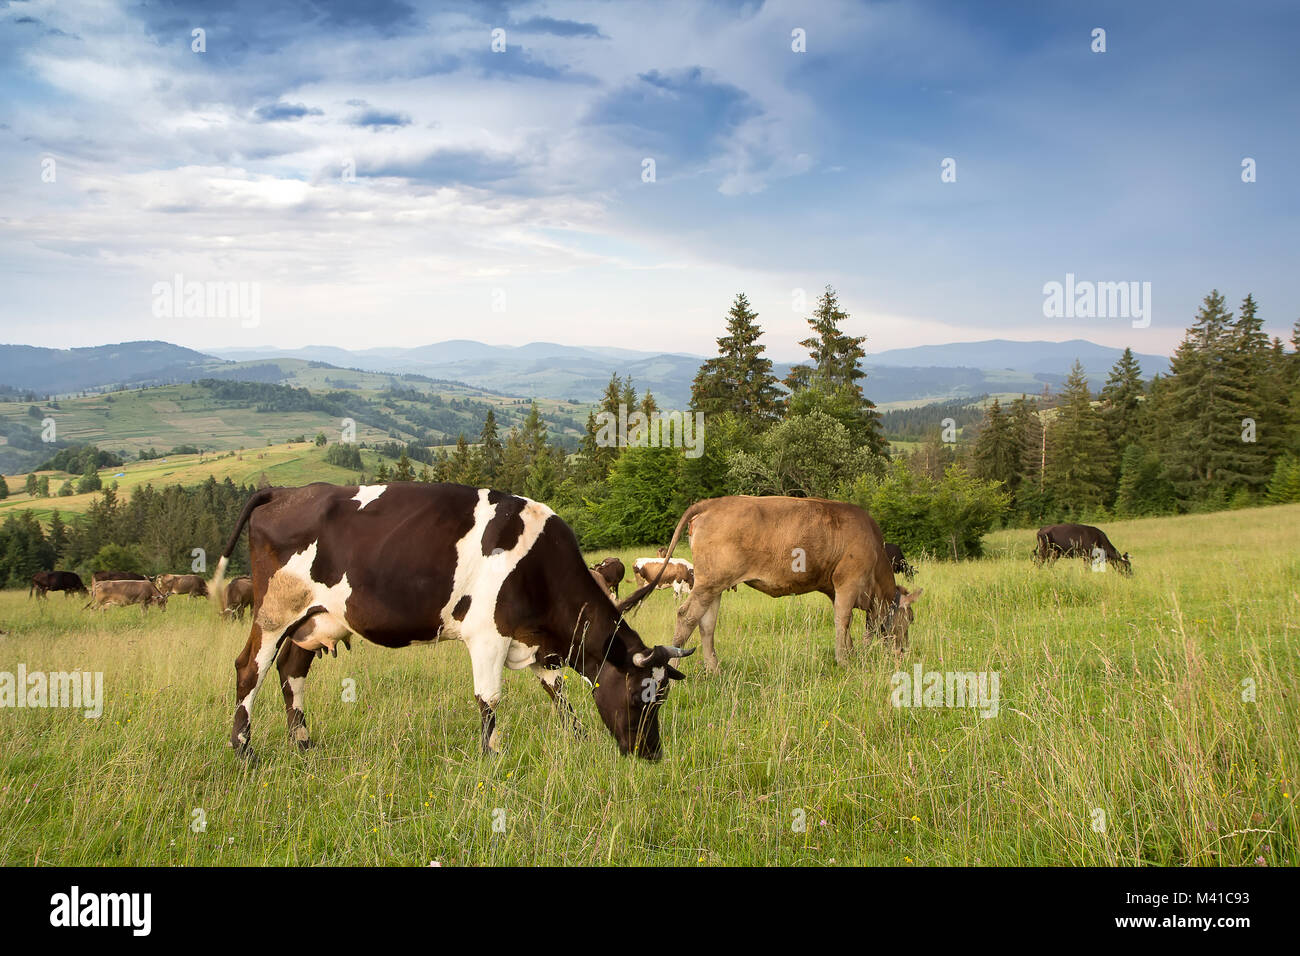 Un rebaño de vacas que pastan en los prados en una zona montañosa Foto de stock